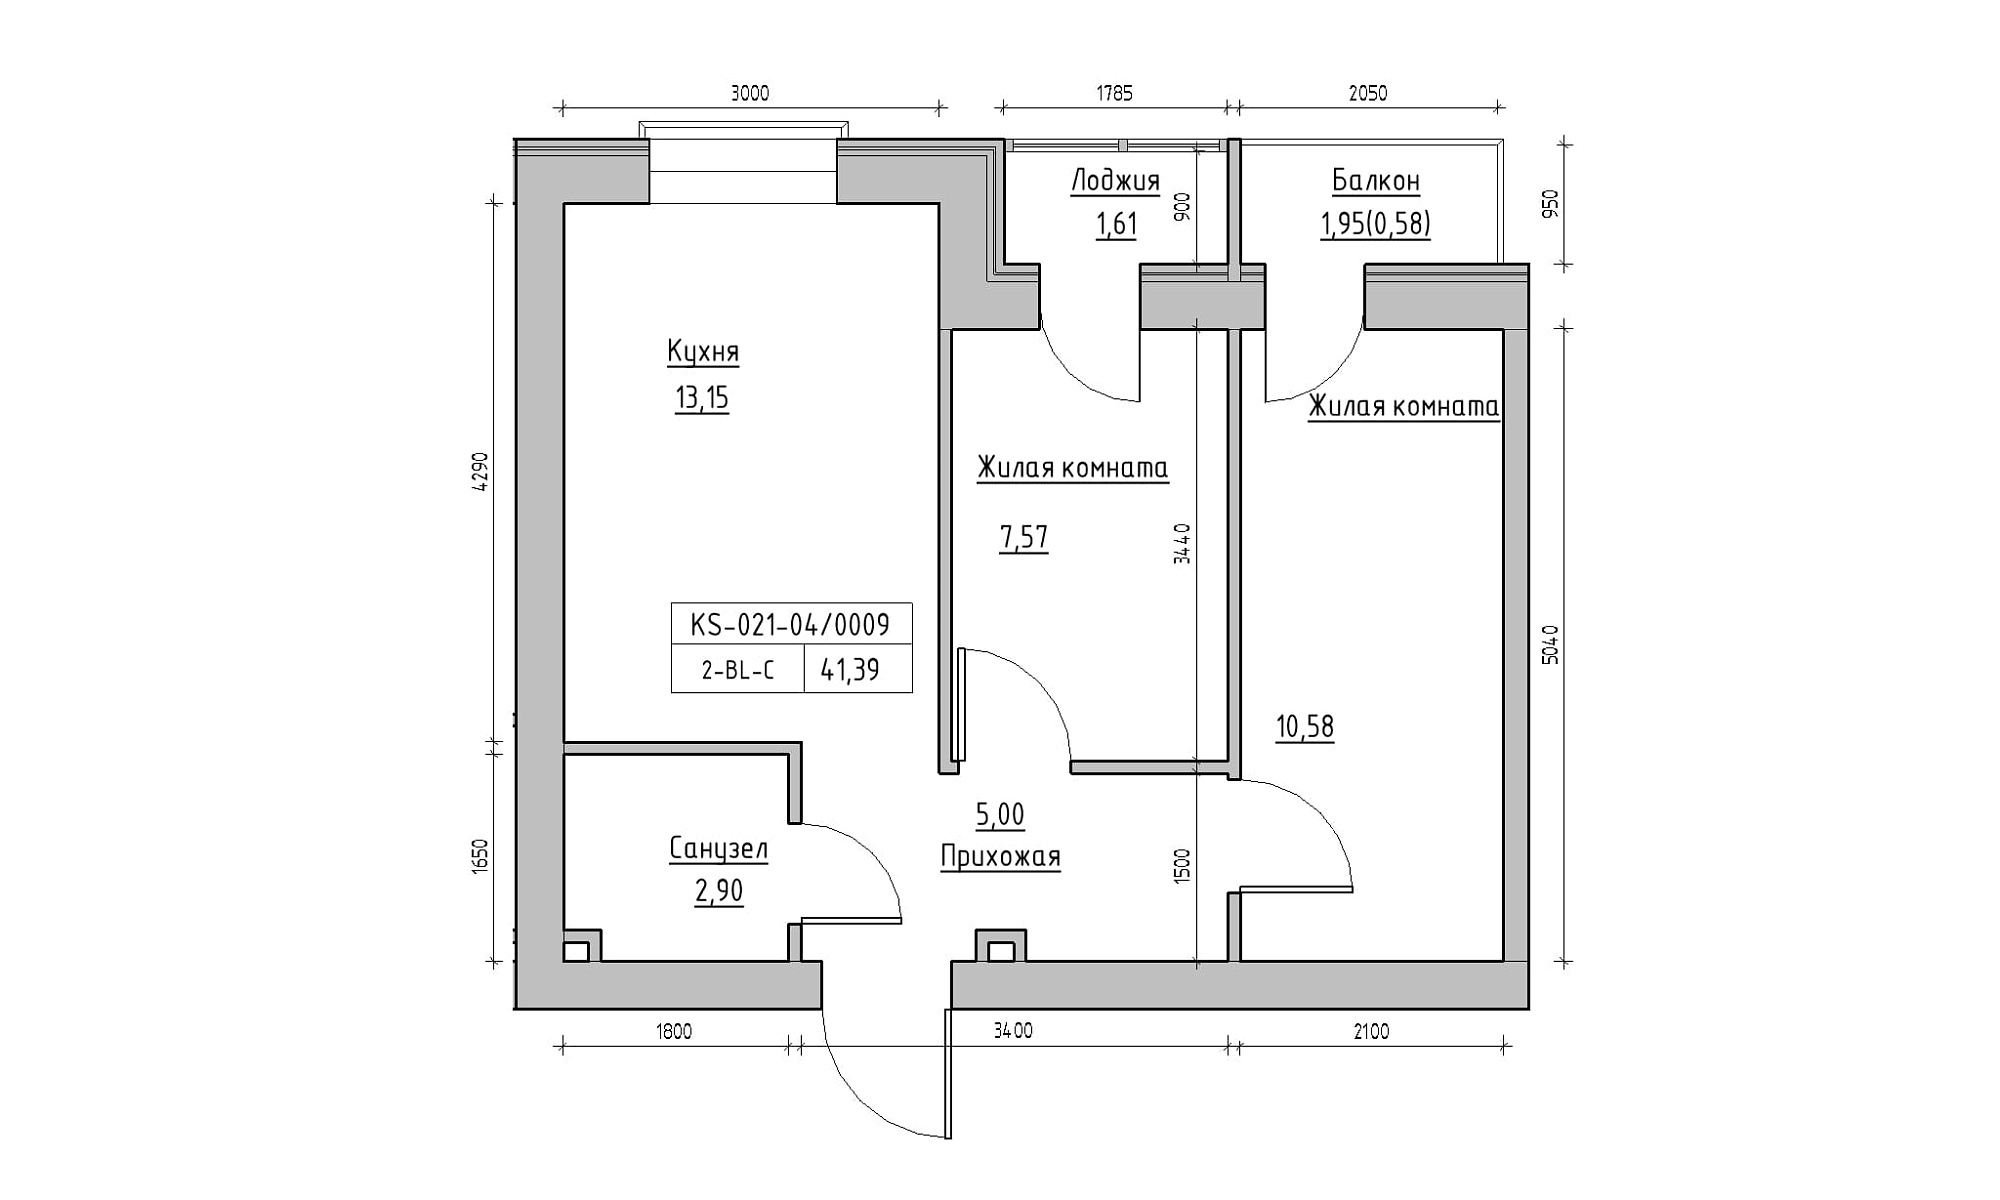 Планировка 2-к квартира площей 41.39м2, KS-021-04/0009.